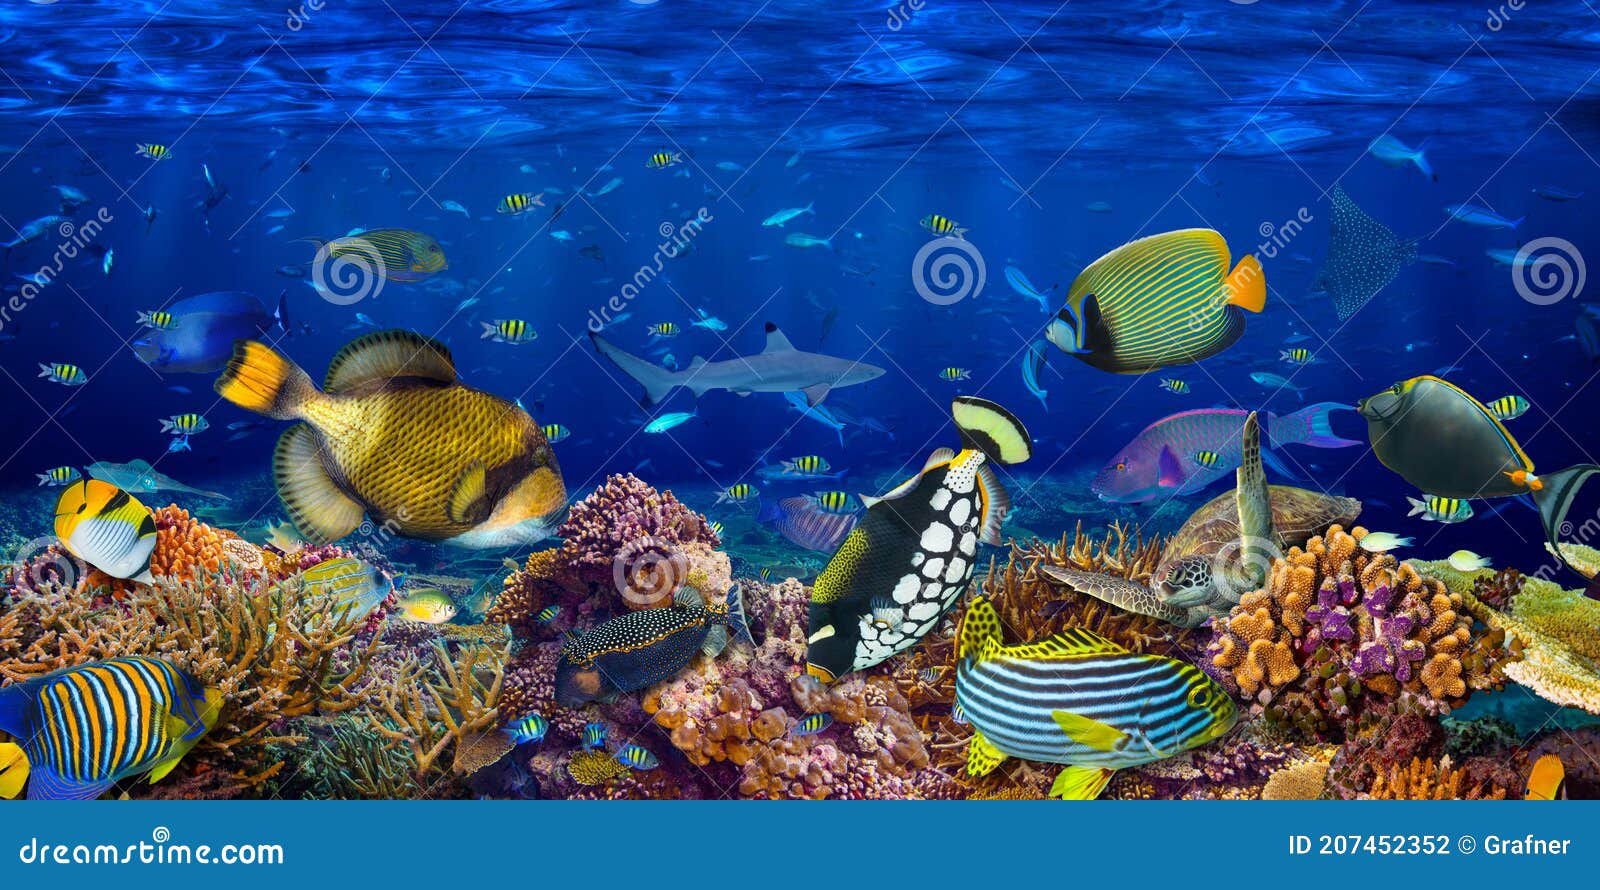 Underwater Coral Reef Landscape Wide Panorama Wallpaper Background... - Bức hình nền Underwater Coral Reef Landscape Wide Panorama Wallpaper Background là sự kết hợp hoàn hảo giữa màu sắc và hình ảnh. Những rạn san hô đầy sức sống sẽ khiến bạn như lạc vào một thế giới dưới đại dương bao la, đầy bí ẩn và đẹp đẽ.